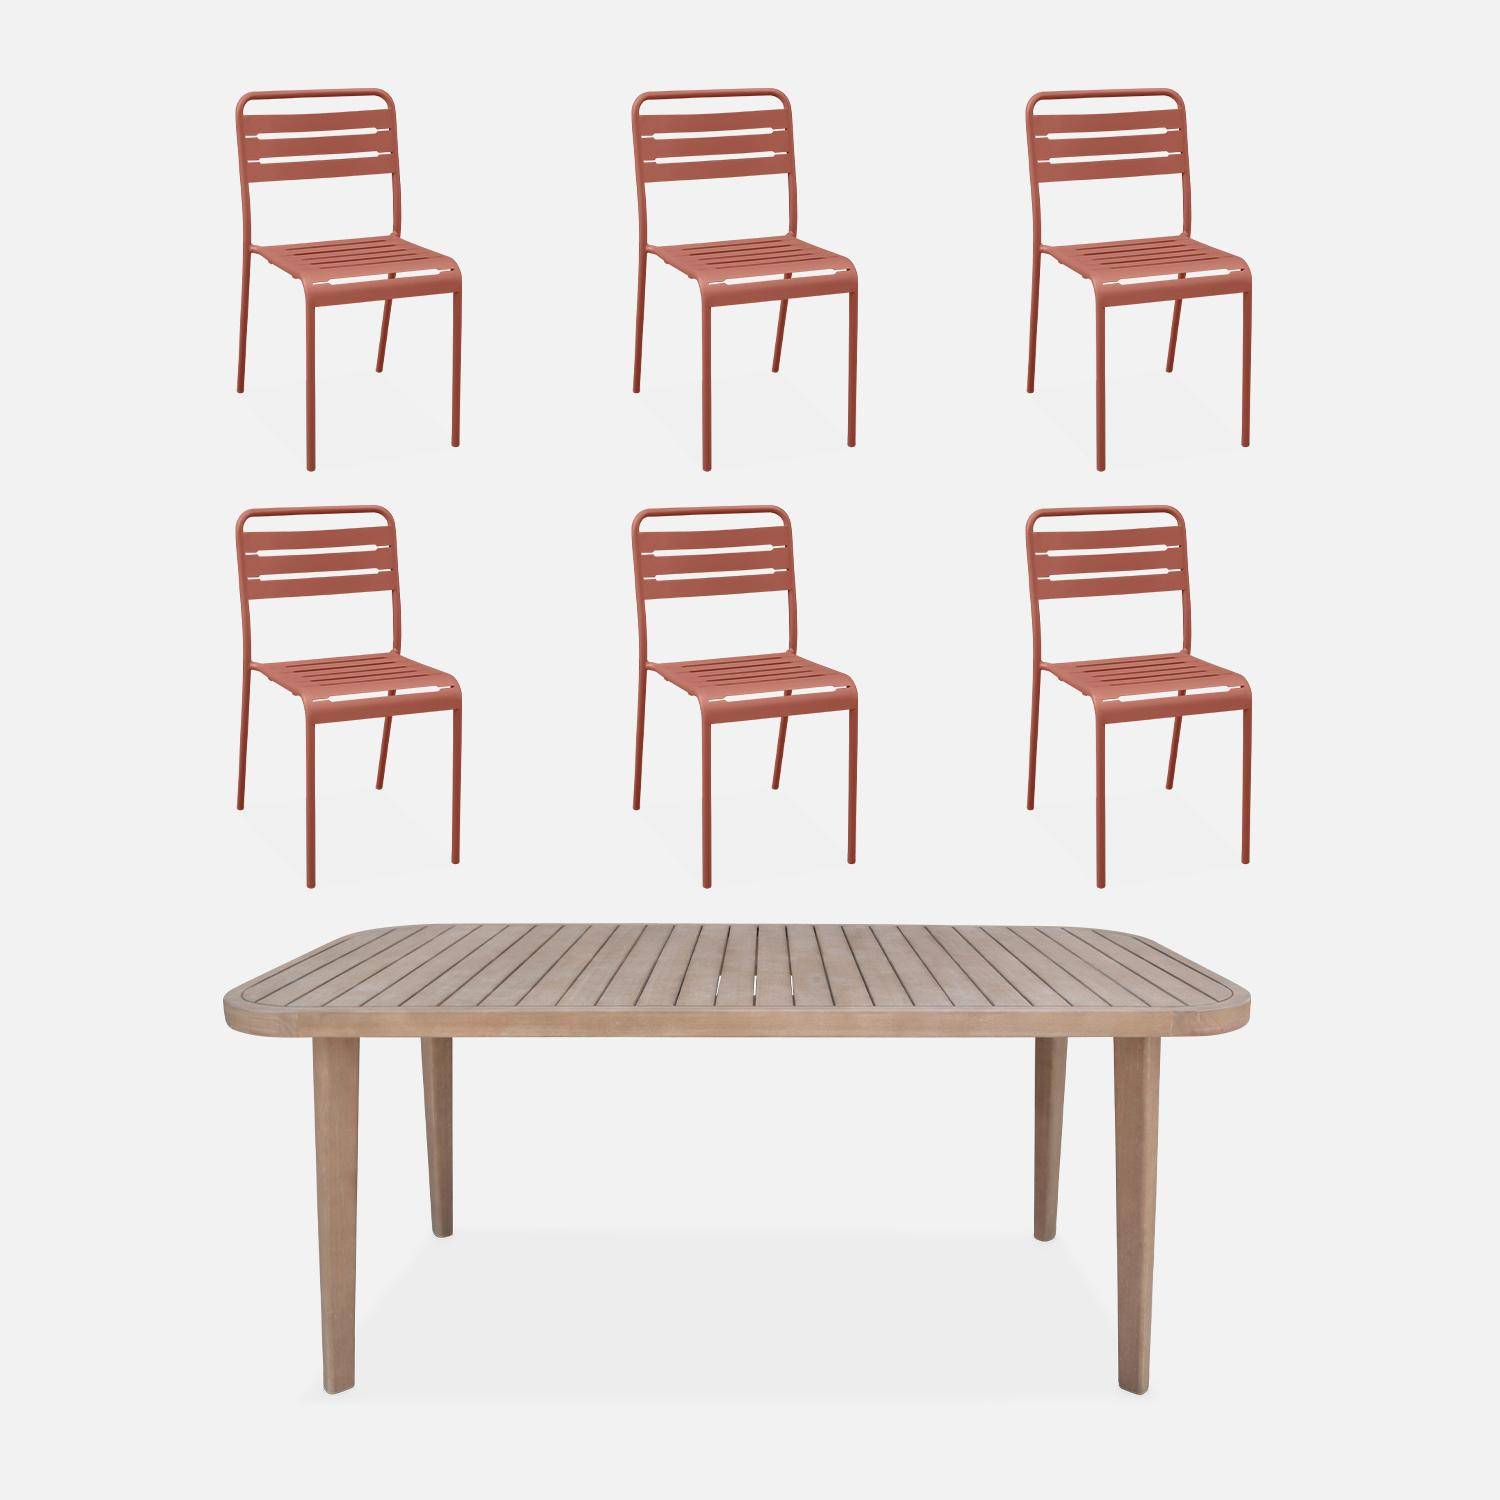 Table de jardin en bois d'eucalyptus FSC, intérieur / extérieur + 6 chaises en métal terracotta Photo1